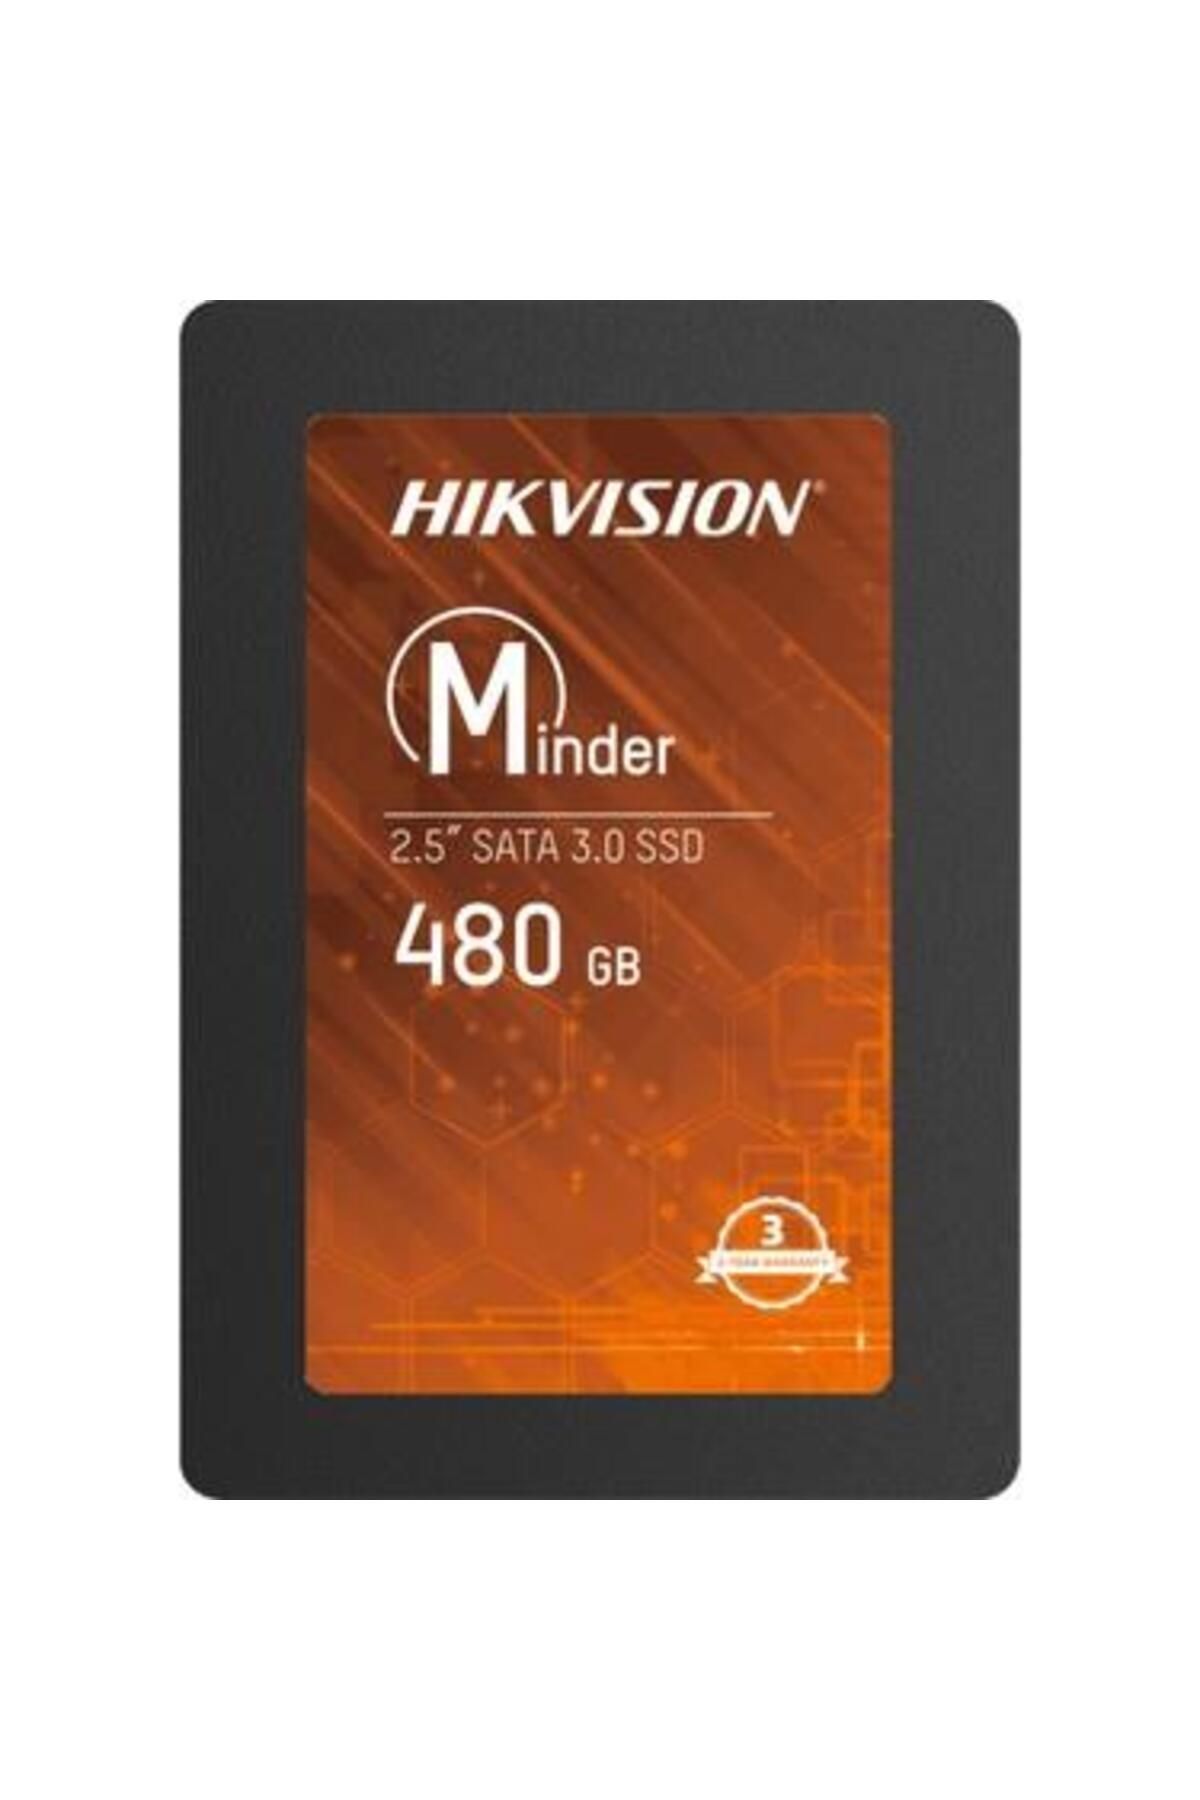 Hikvision SSD 480 GB Hs-ssd-minder(s) 2.5" Sata 3.0 Minder Ssd